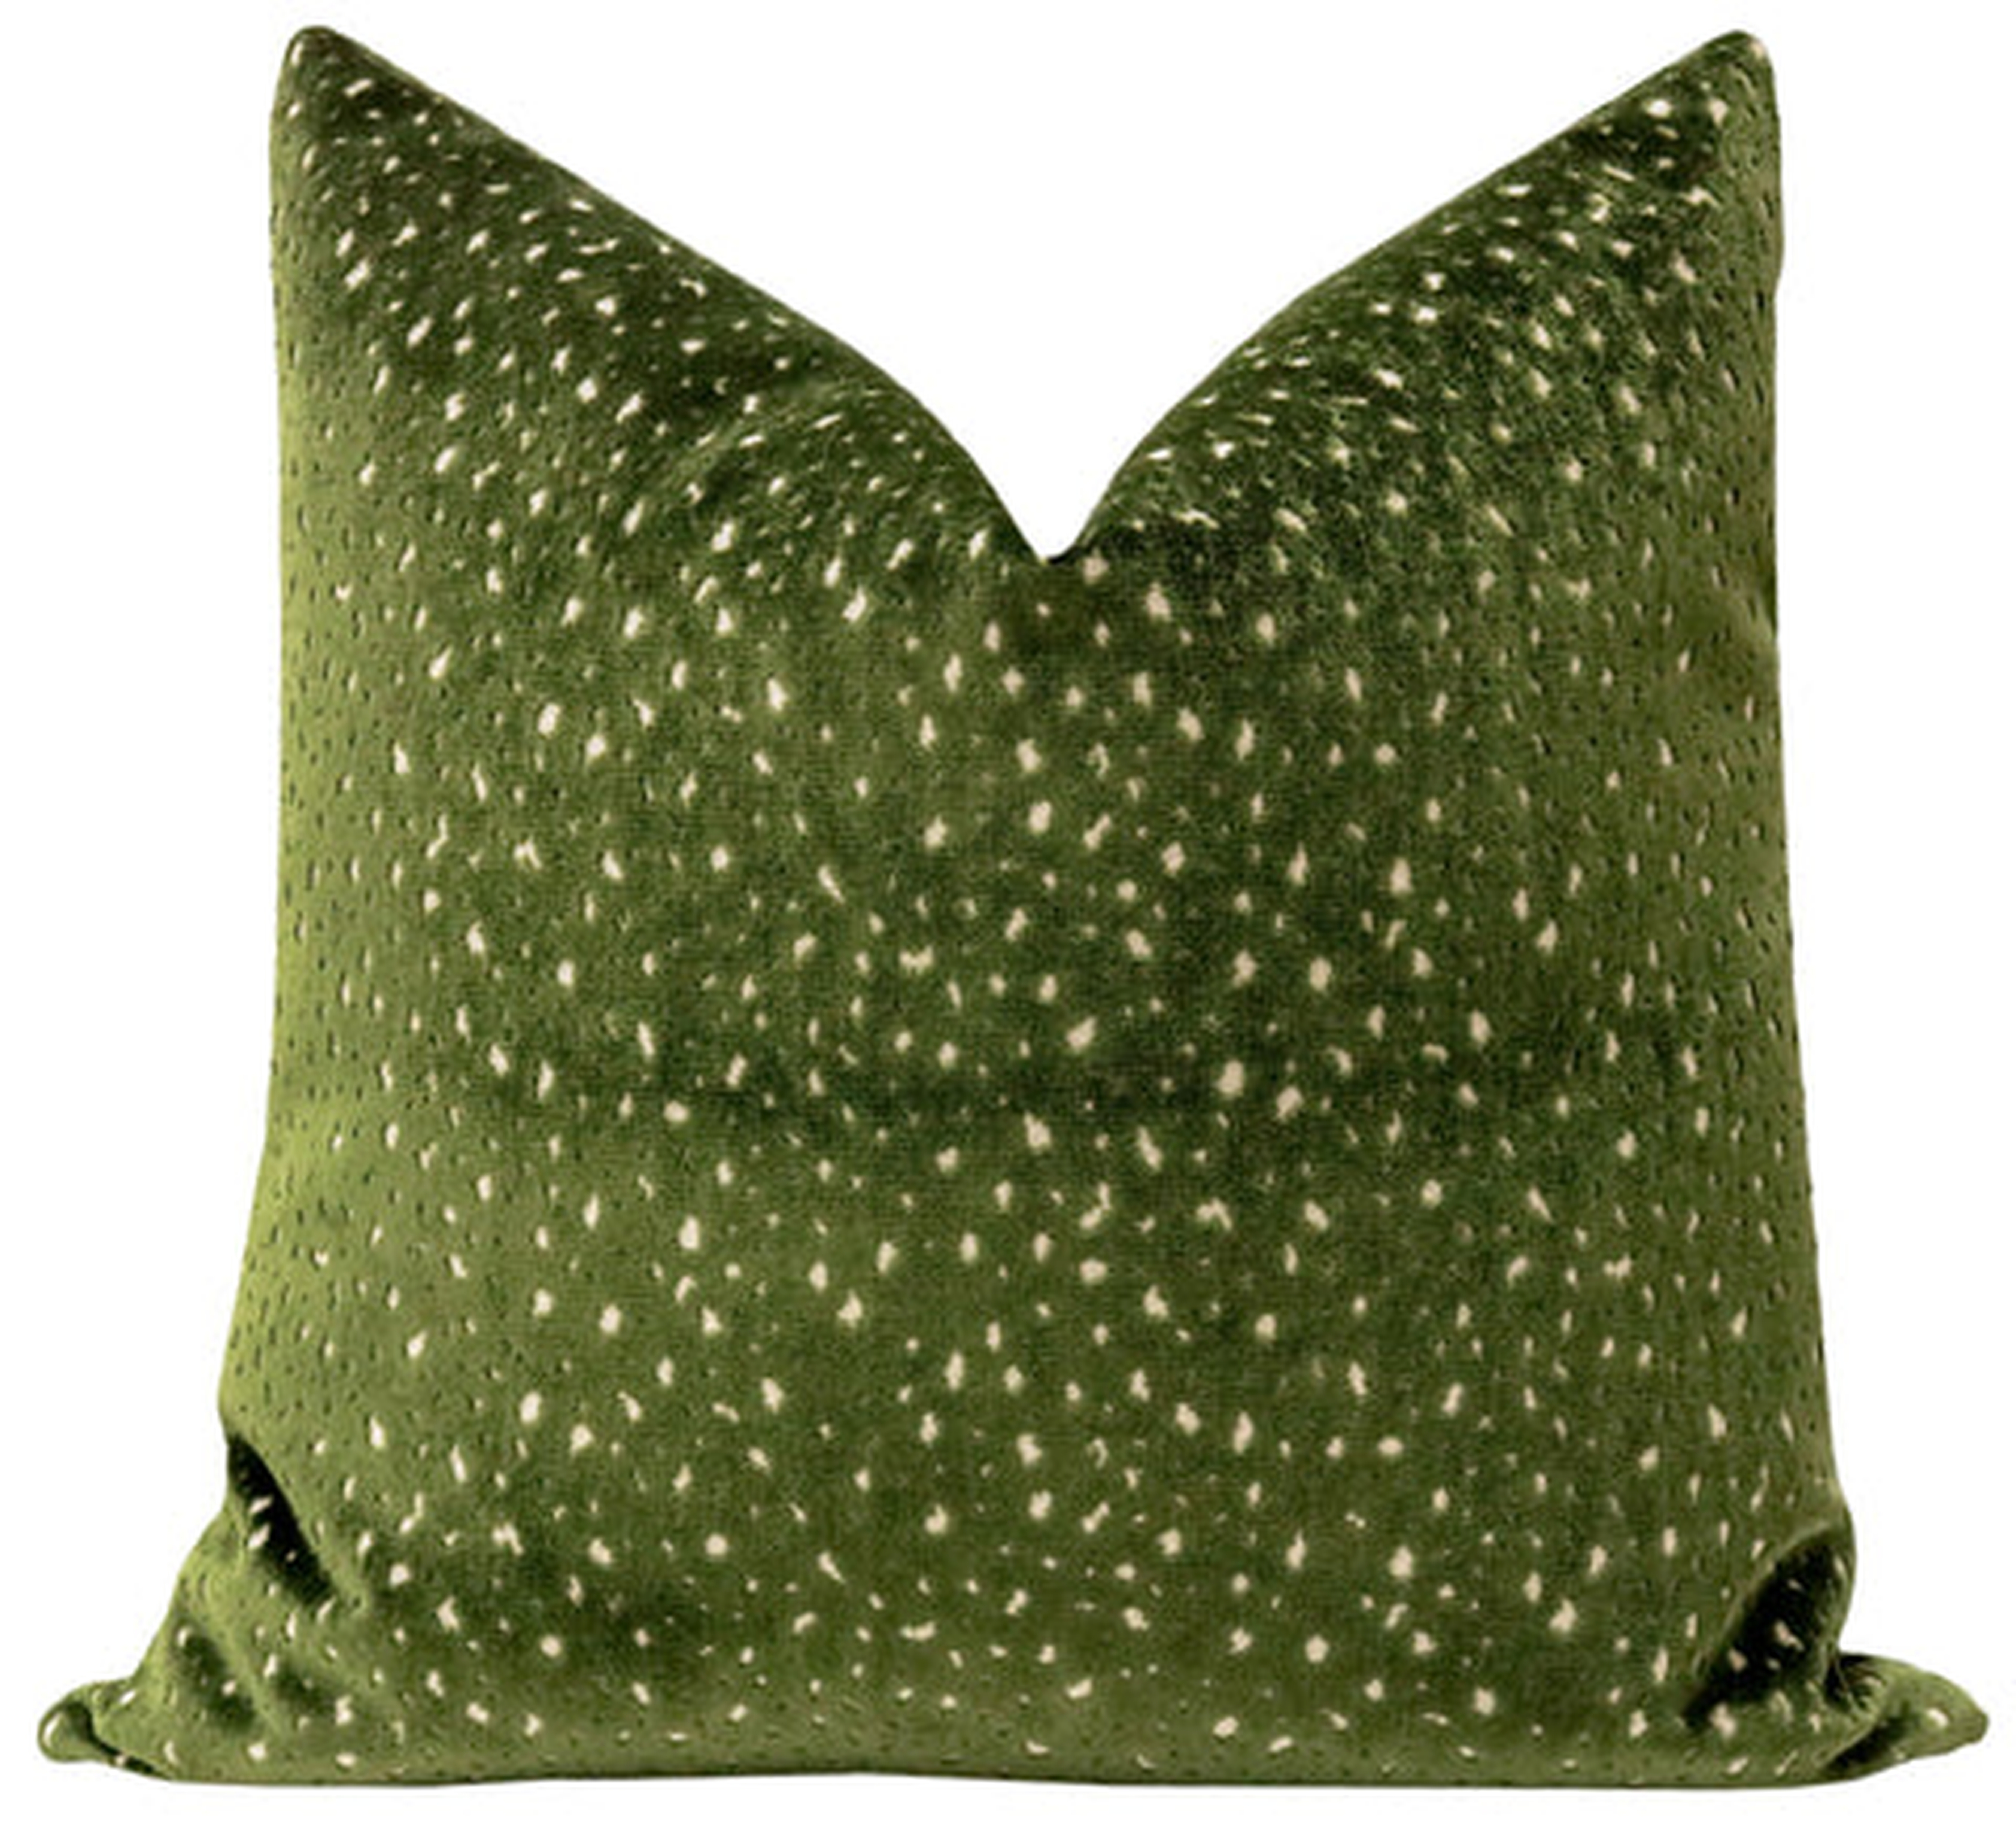 Antelope Cut Velvet Pillow Cover, Olive, 20" X 20" - Little Design Company